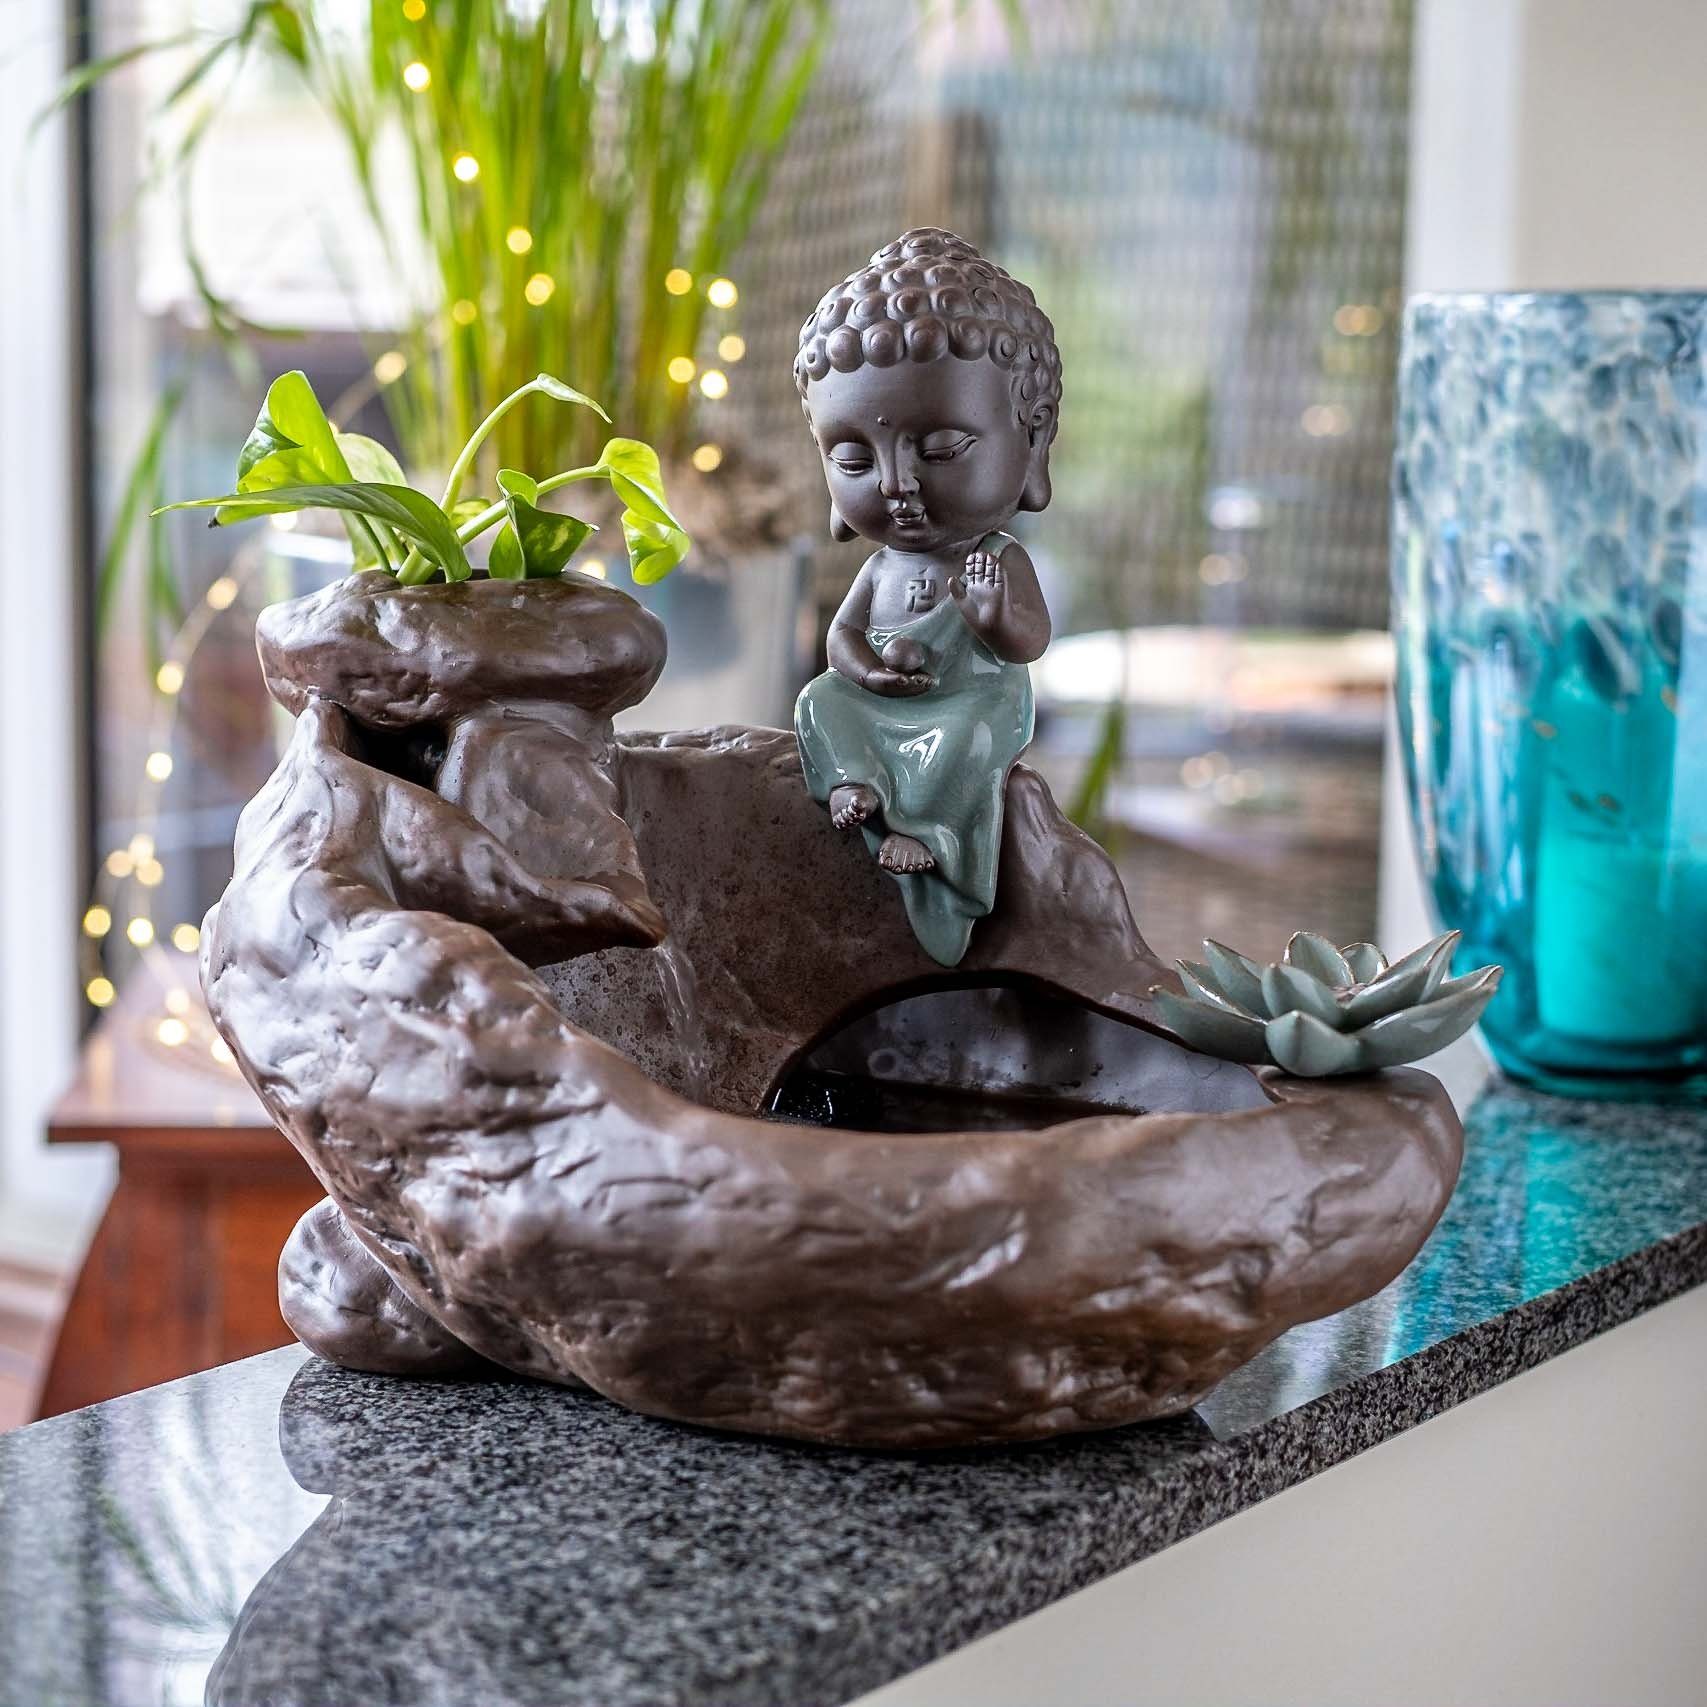 IDYL Zimmerbrunnen Zimmerbrunnen IDYL Keramik mit aus Buddha-Figur